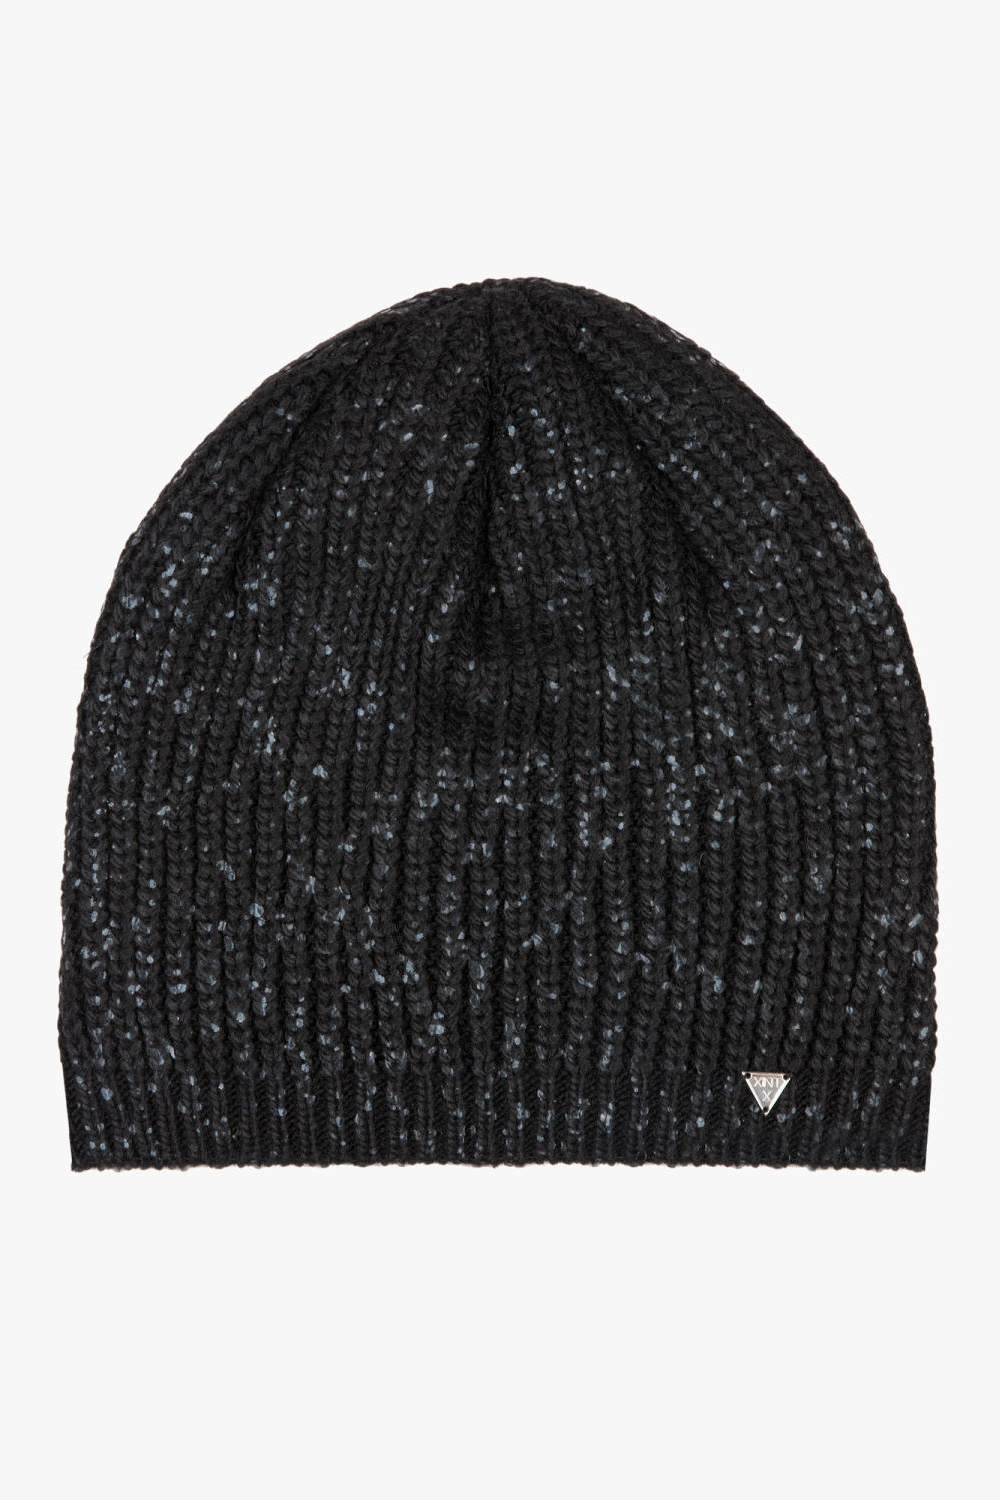 Žieminė kepurė XINT 99256-SIYAH